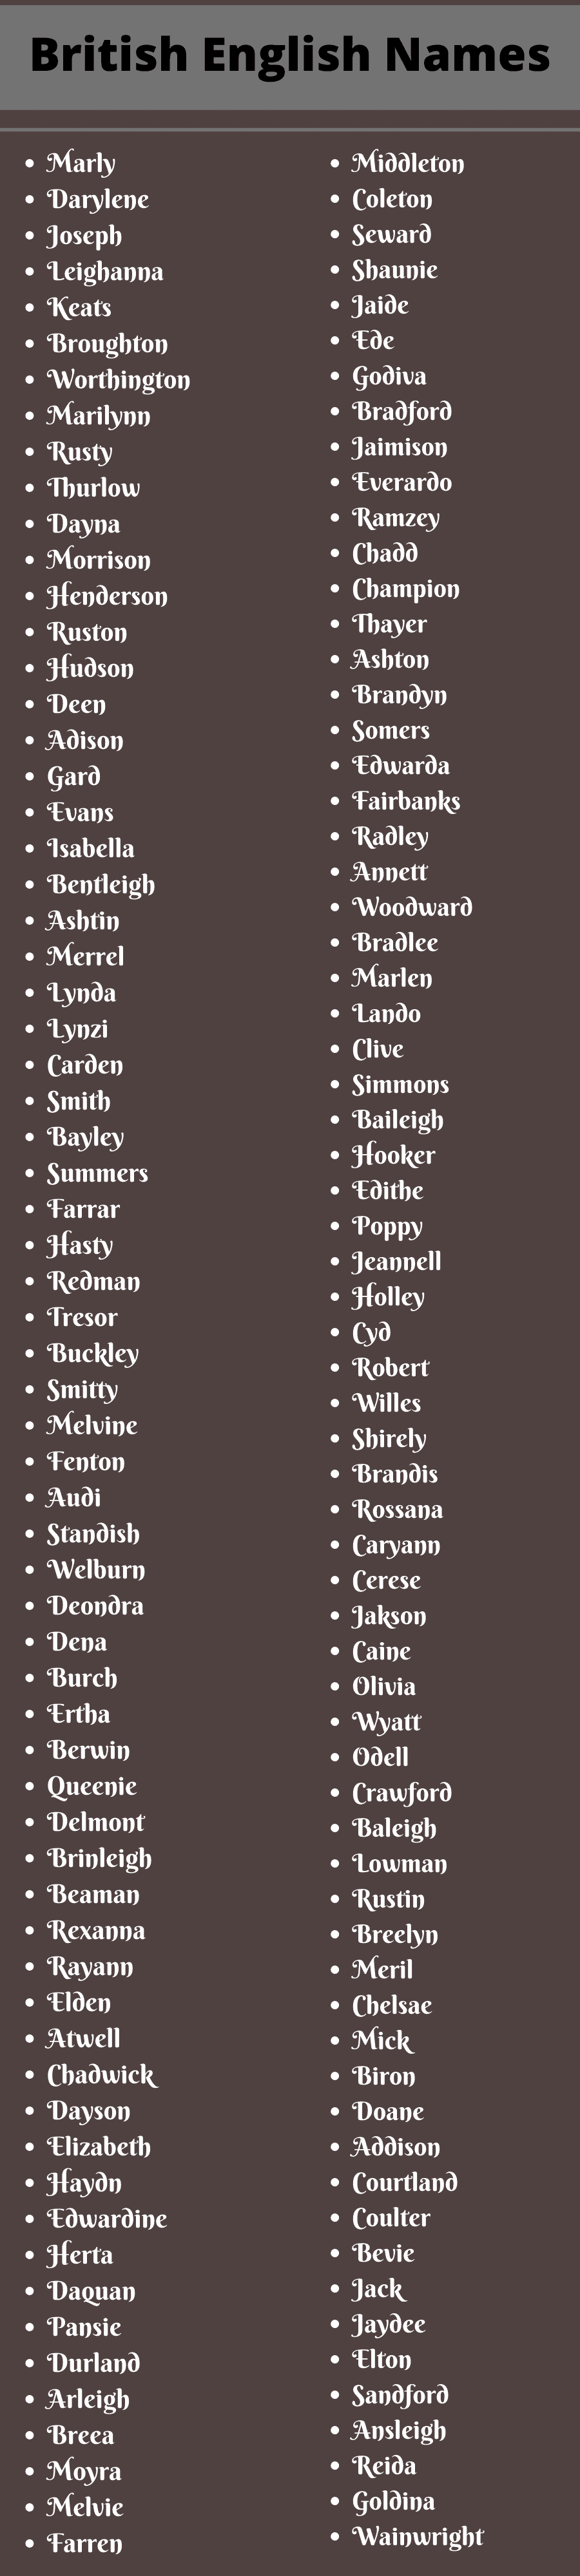 British English Names